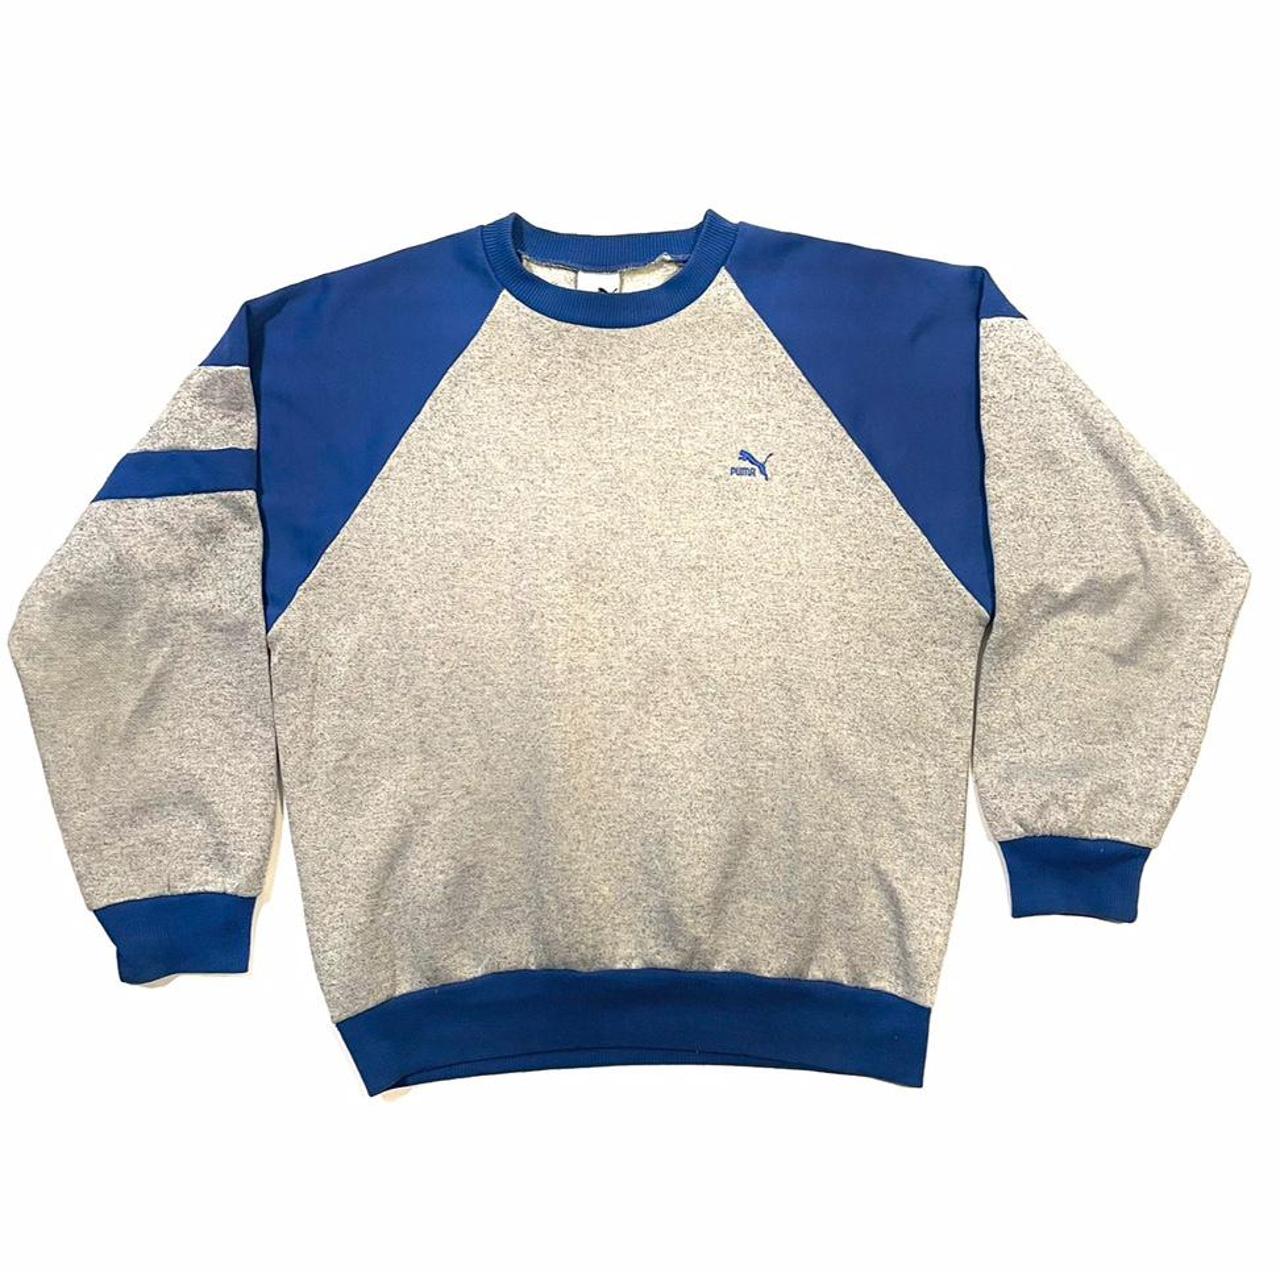 Vintage Puma sweatshirt crewneck 90s embroidered... - Depop